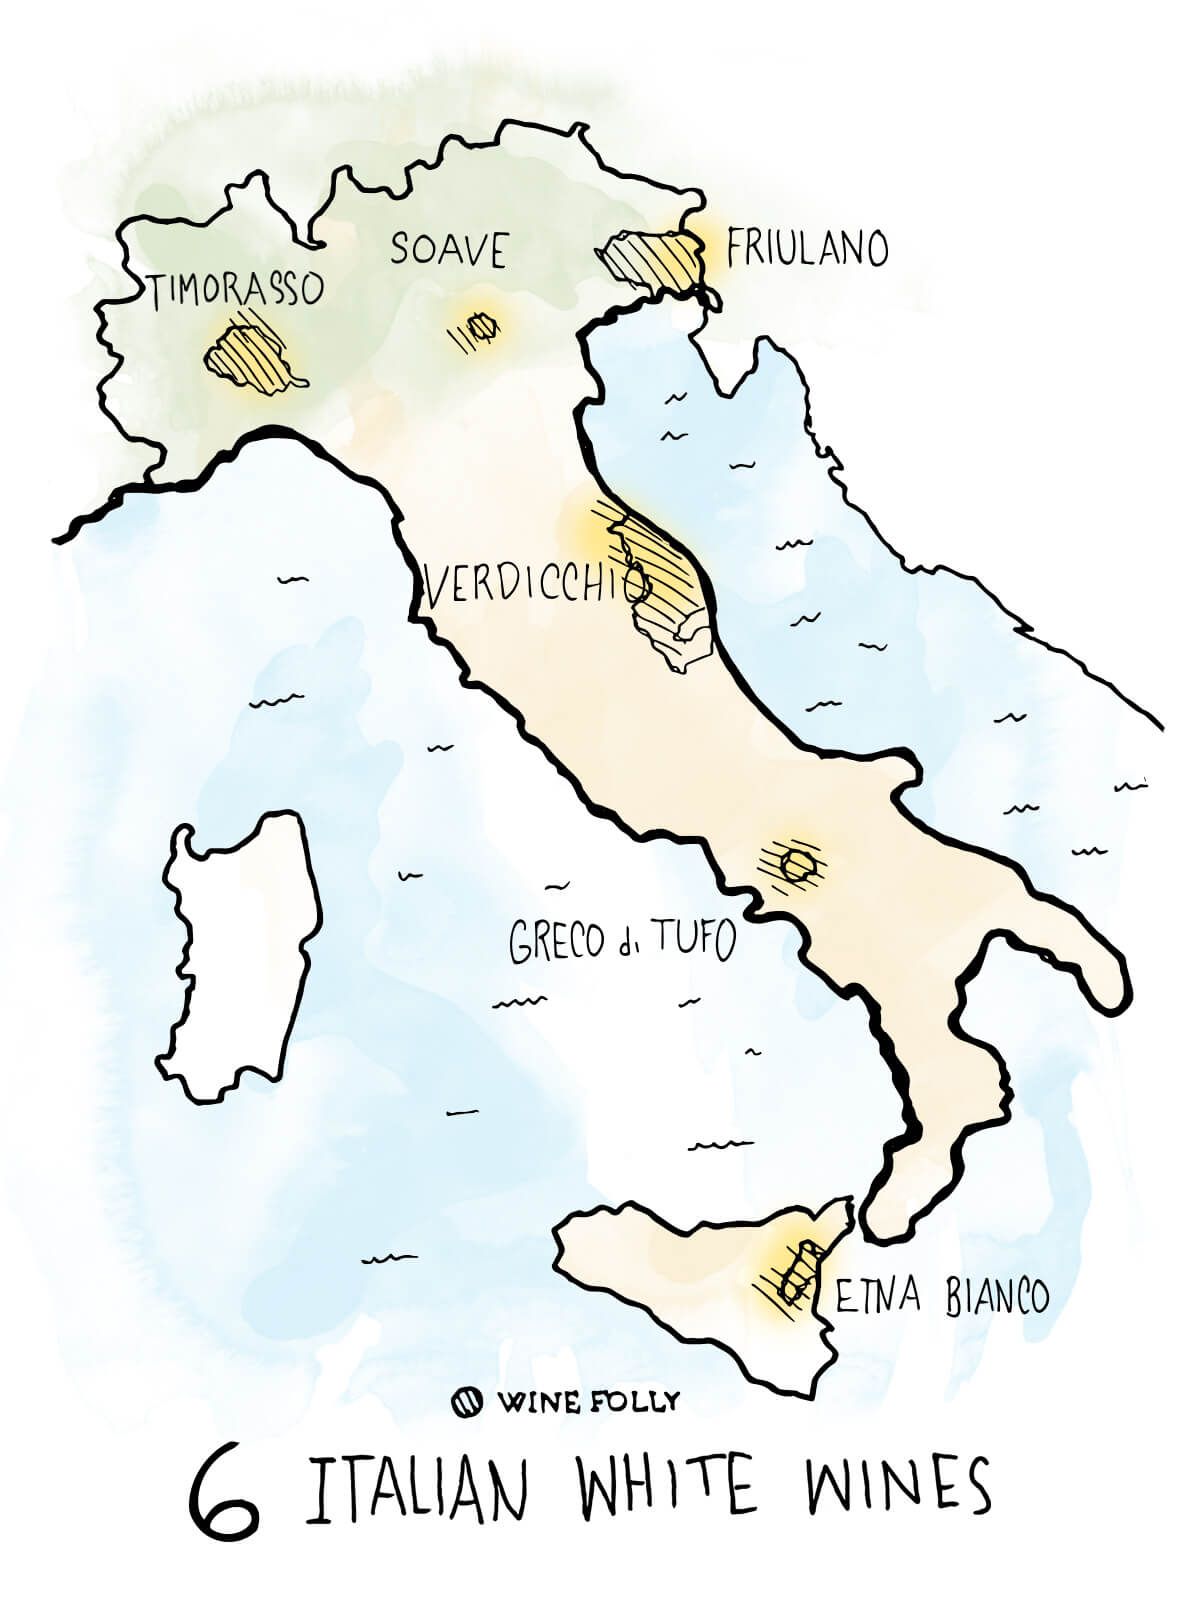 6-איטלקי-יינות לבנים-לדעת-מפה-איור-יין